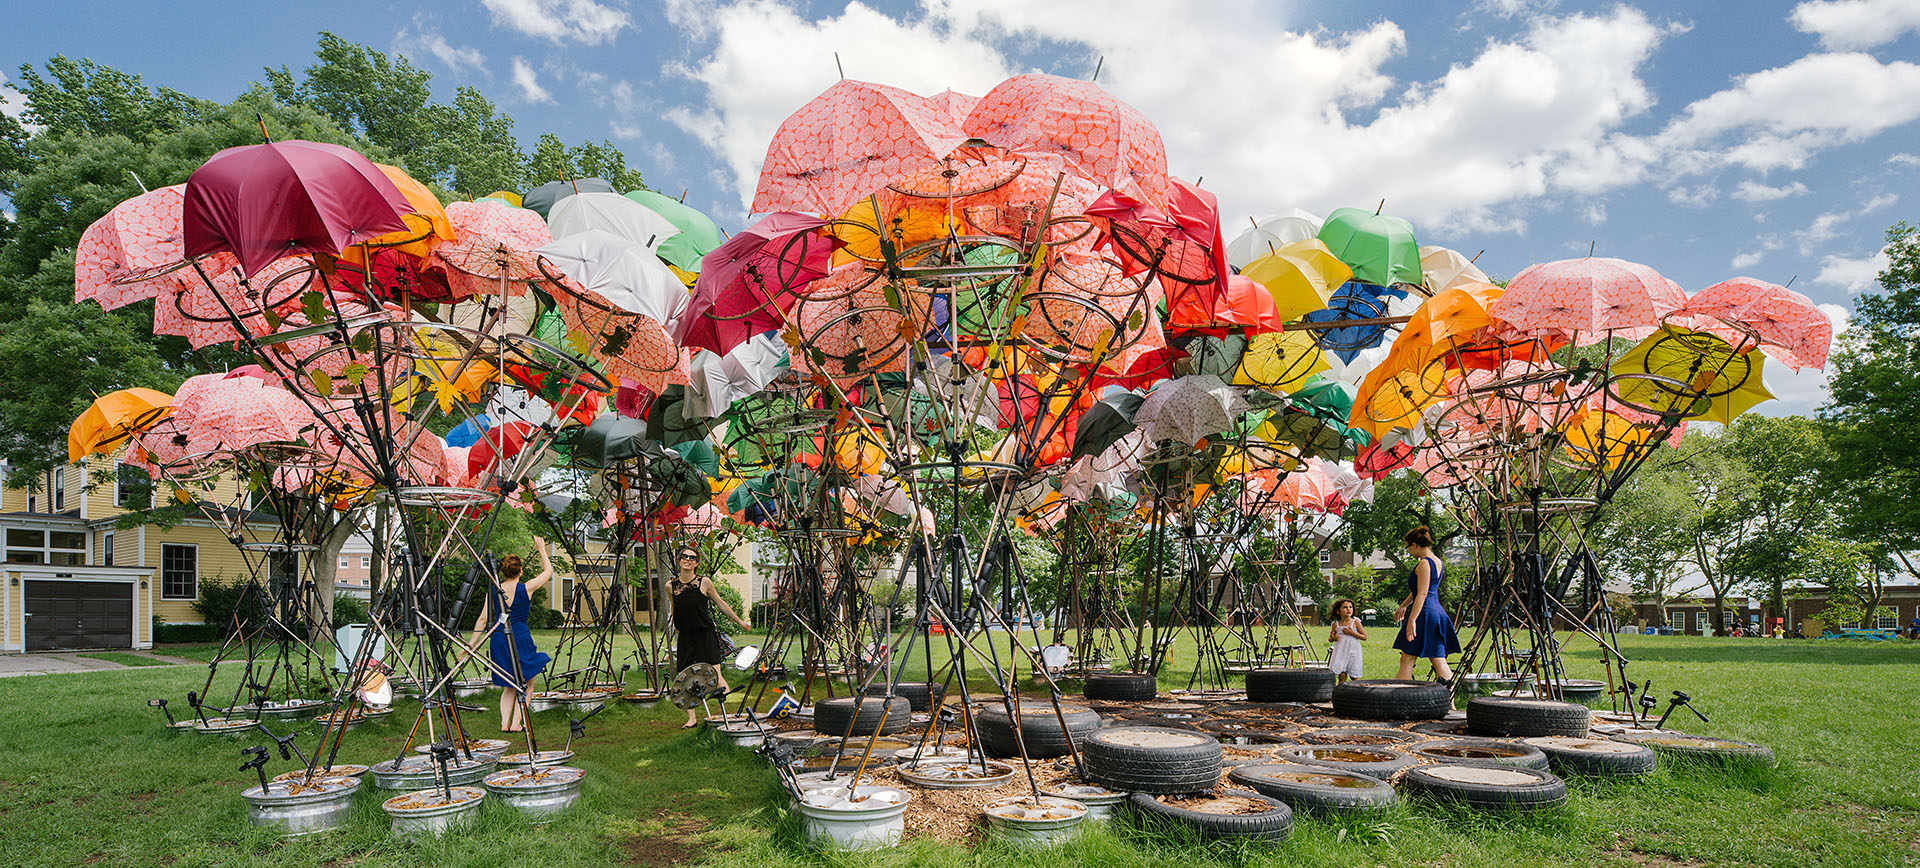 Diseño de Izaskun Chinchilla para la Dreams Pavilion Competition en Nueva York.